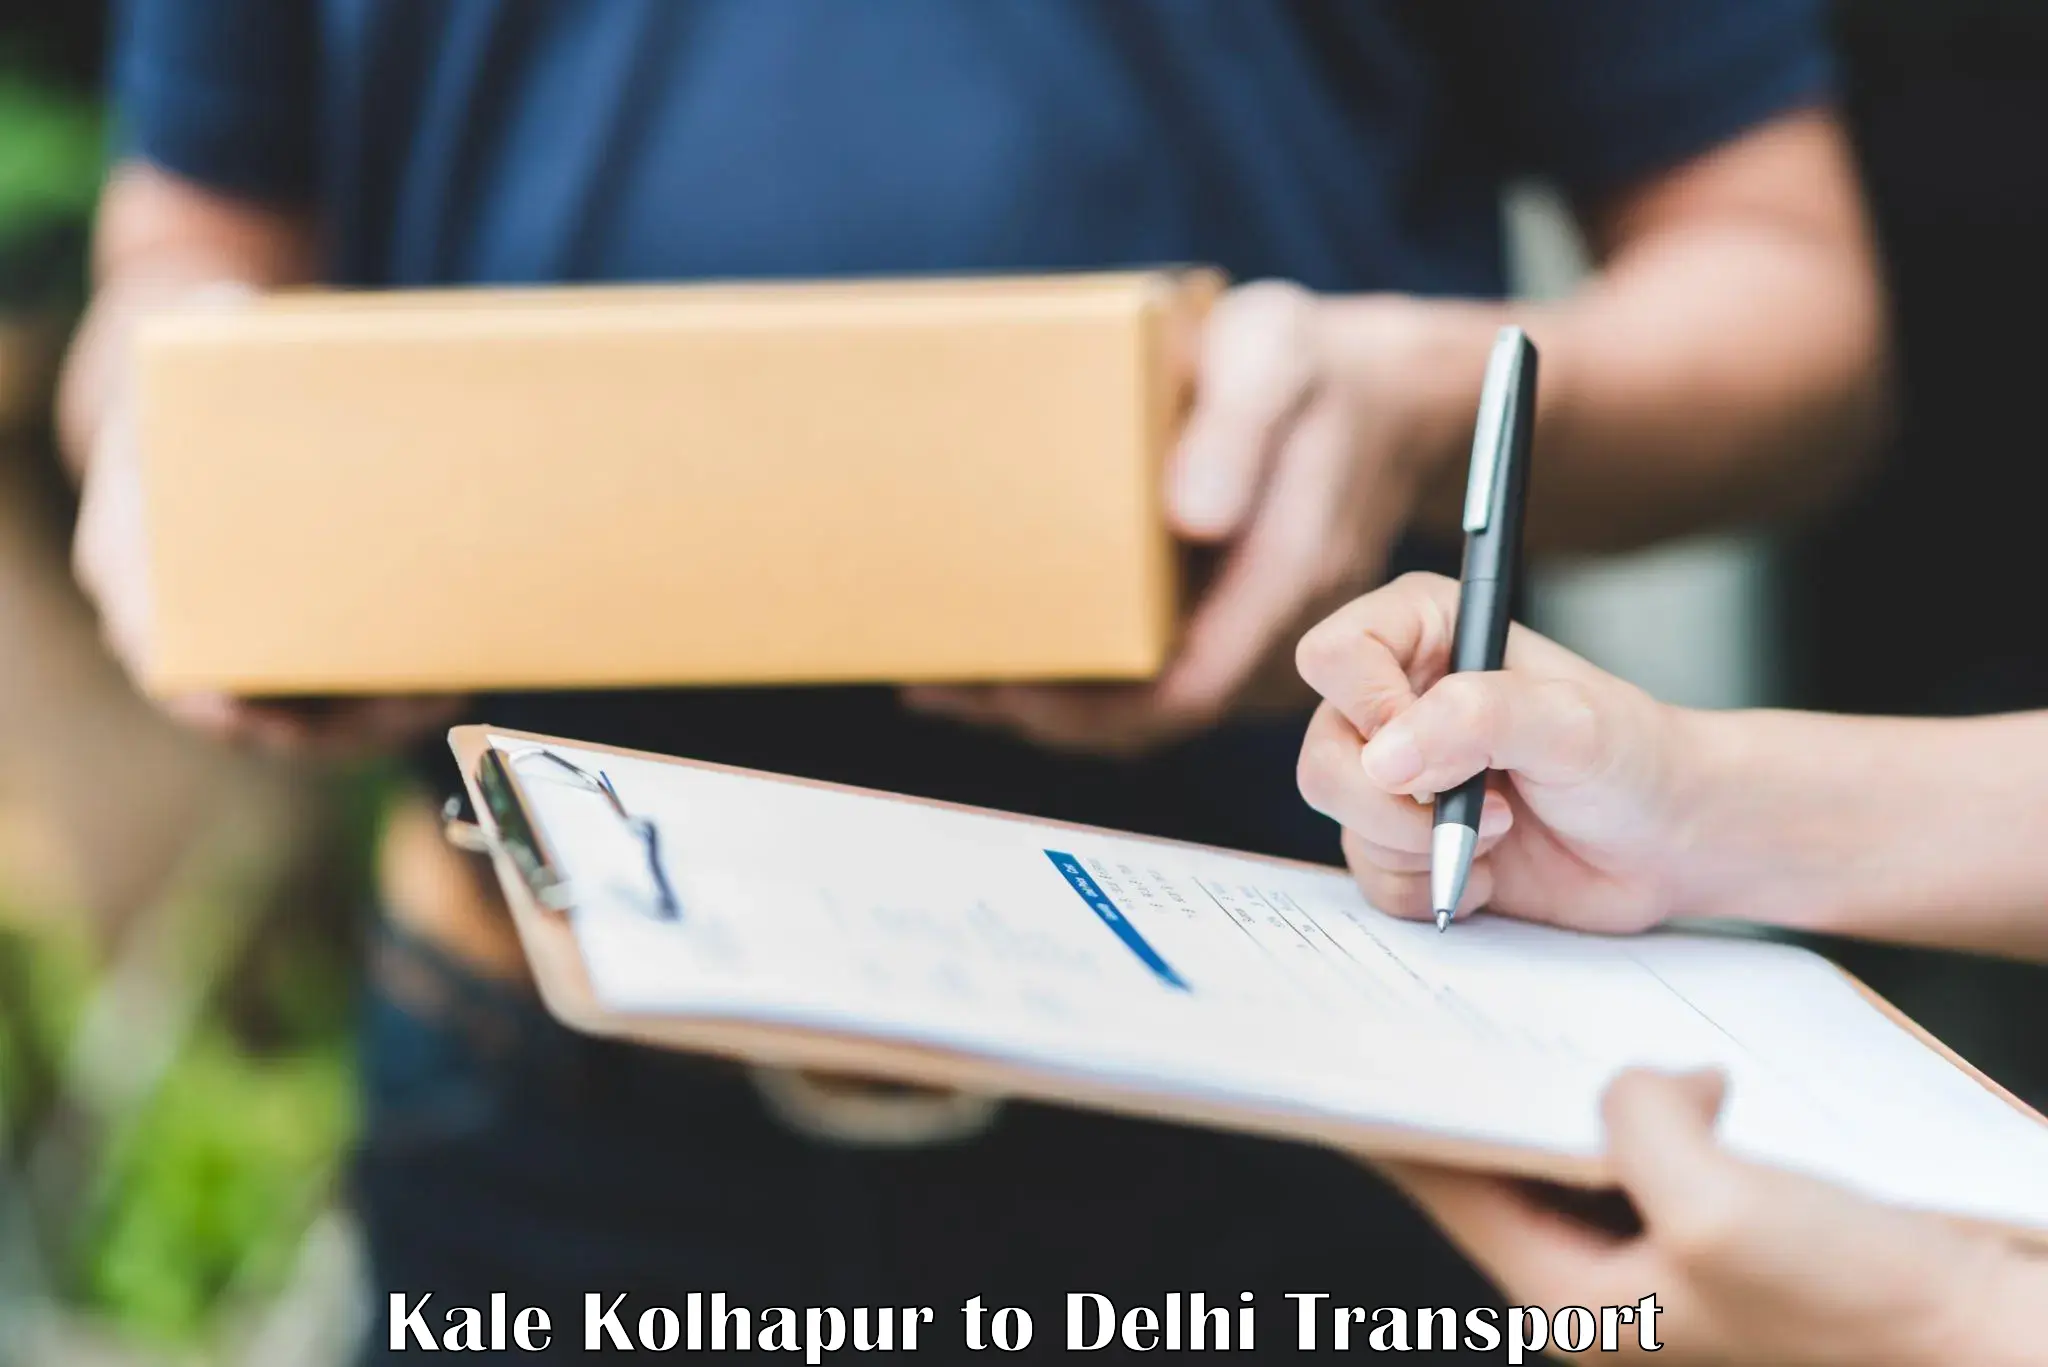 Road transport online services Kale Kolhapur to NIT Delhi